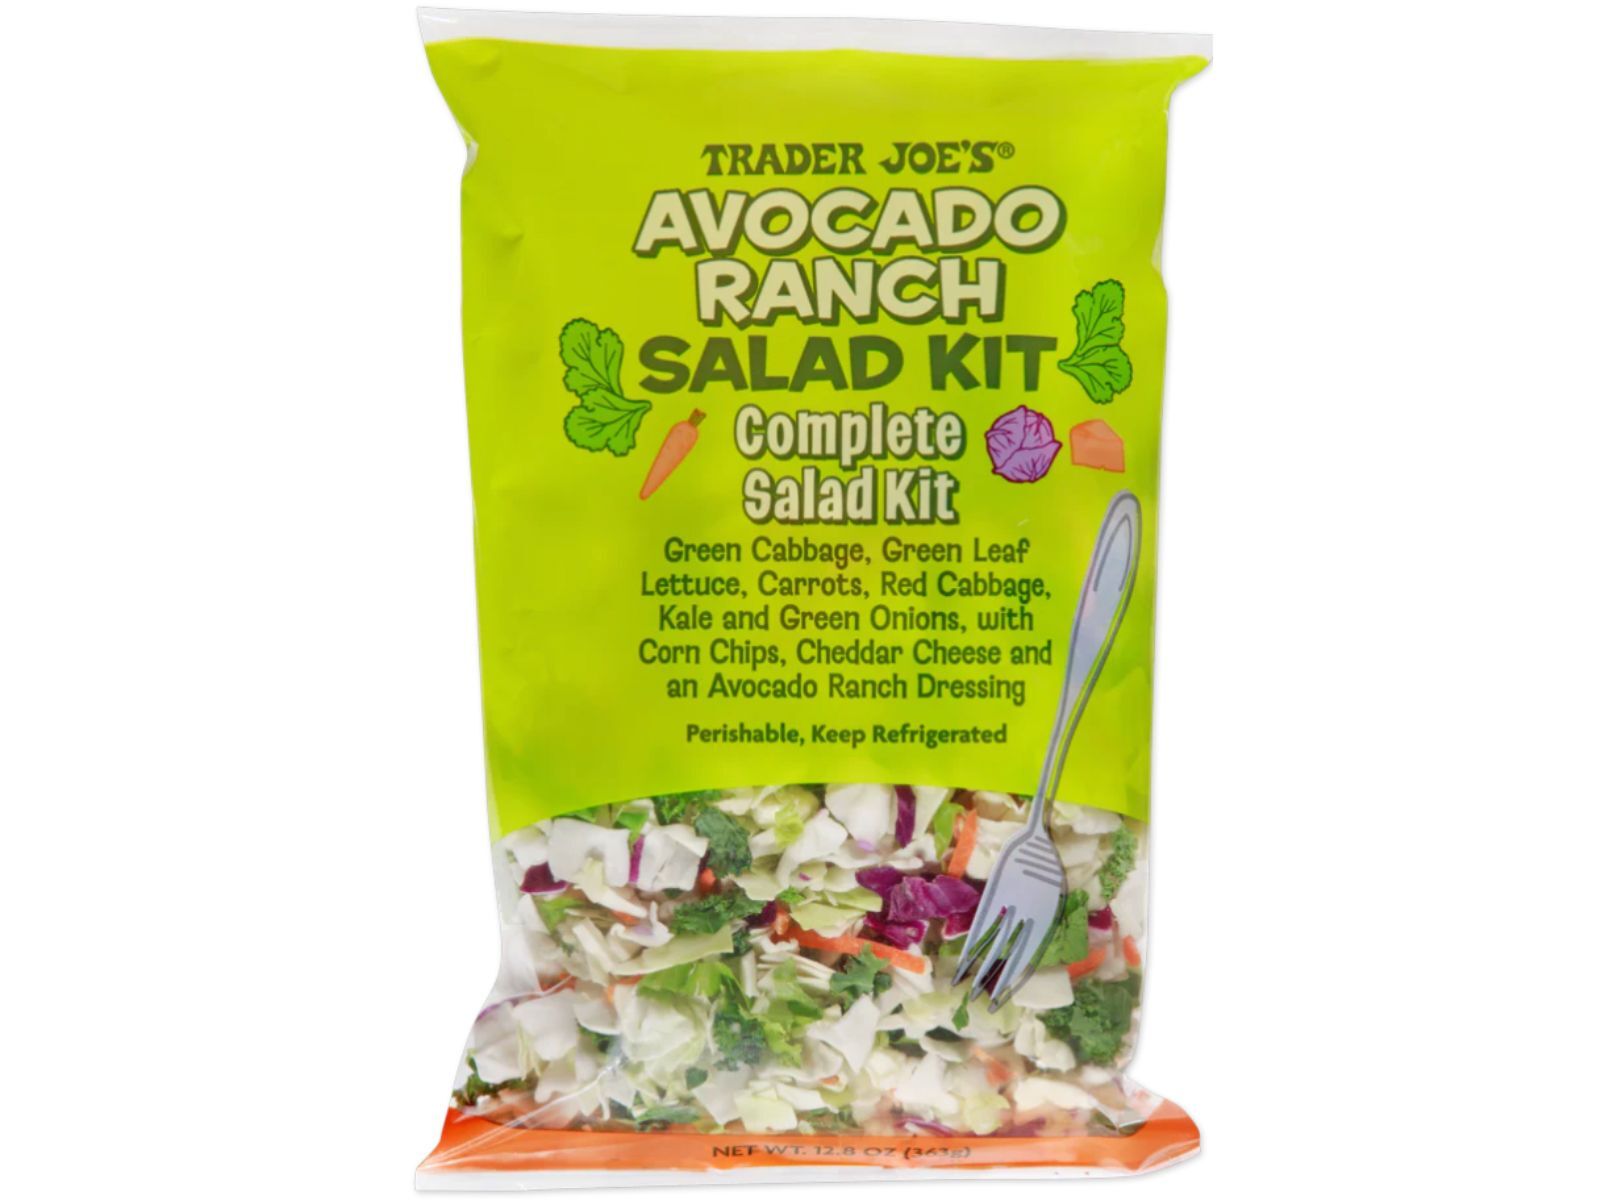 Trader Joe's salad kits: Avocado ranch salad kit